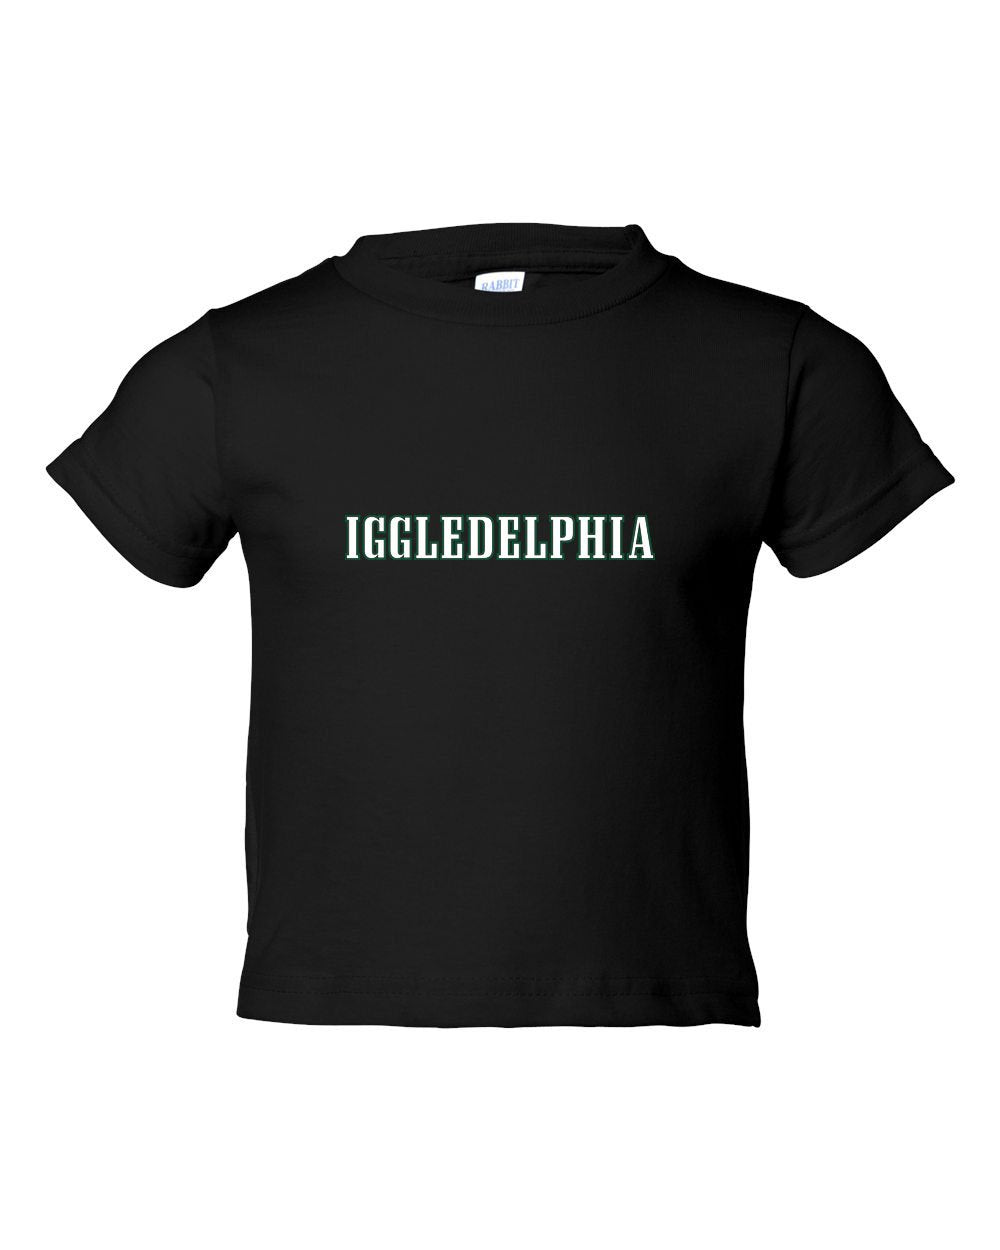 Iggledelphia TODDLER T-Shirt